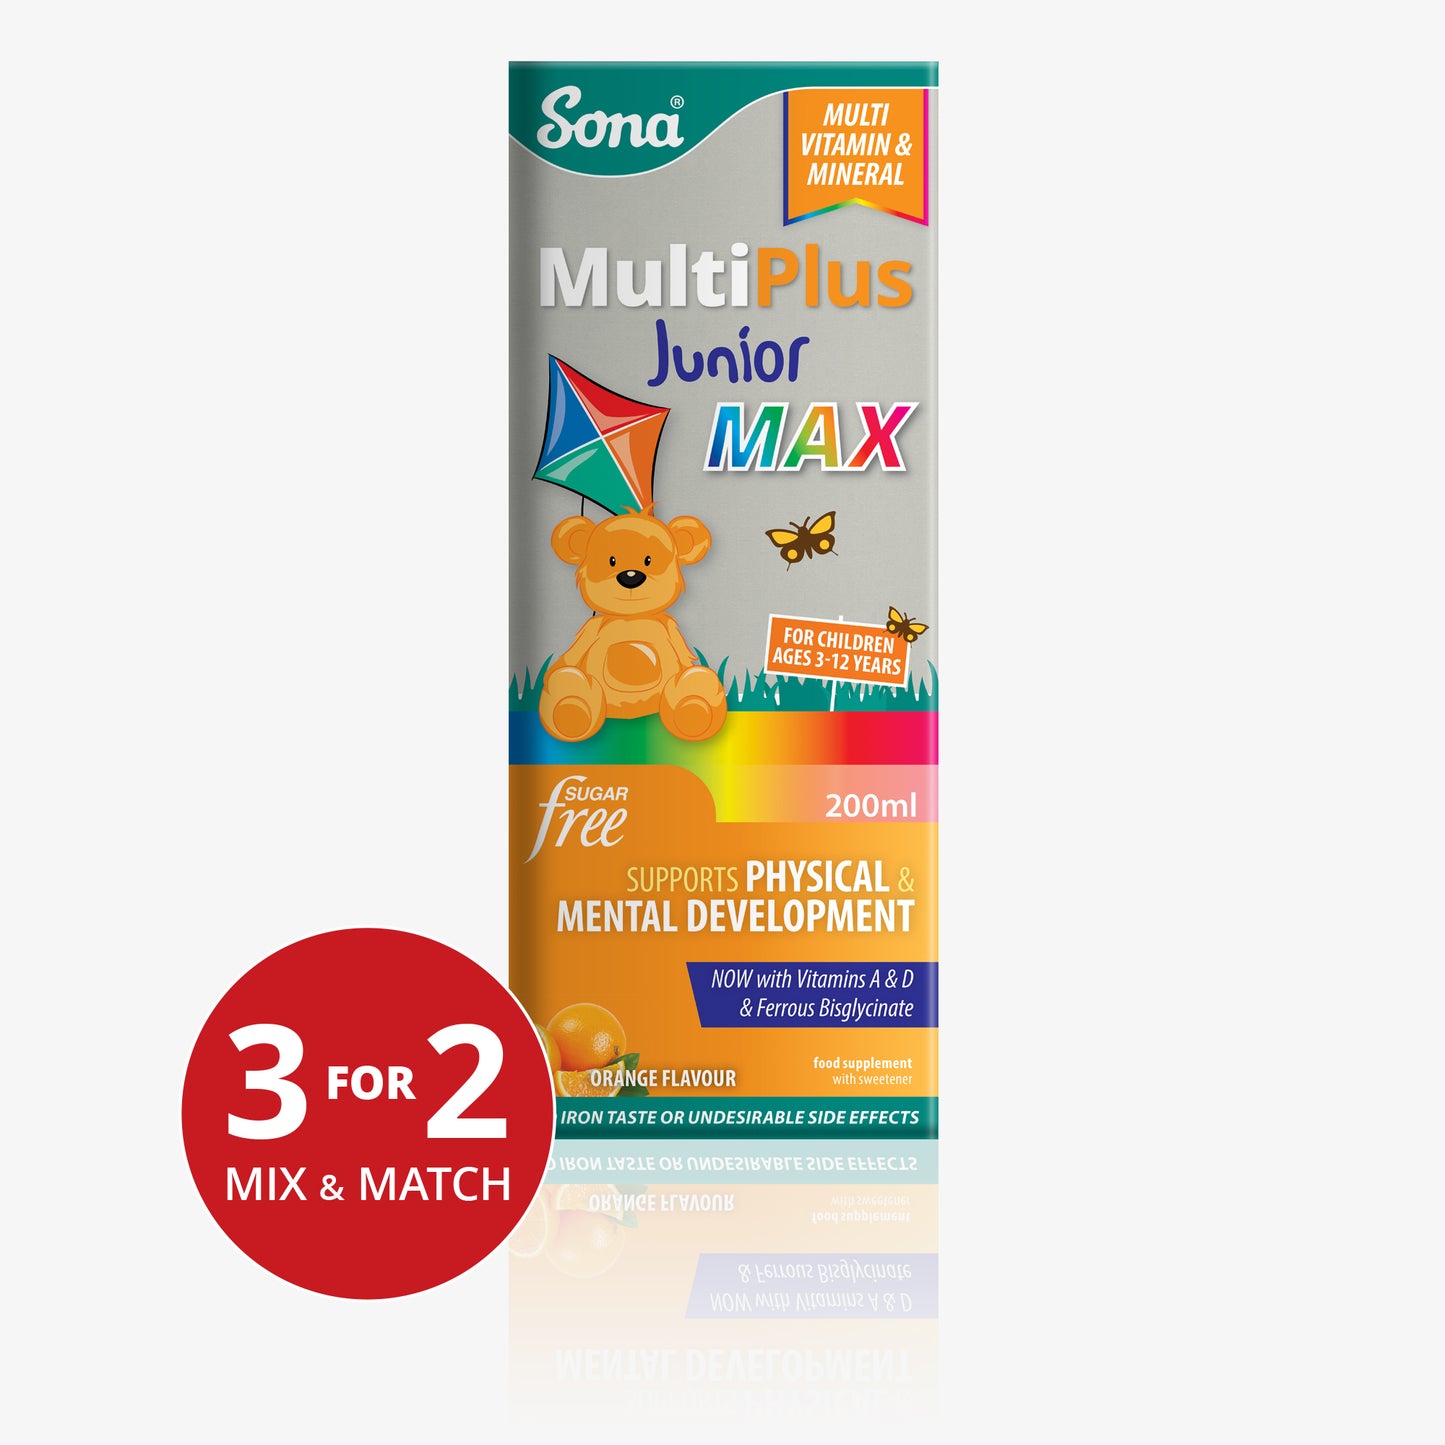 MultiPlus Junior MAX - Complete Multivitamin / Multimineral for Children